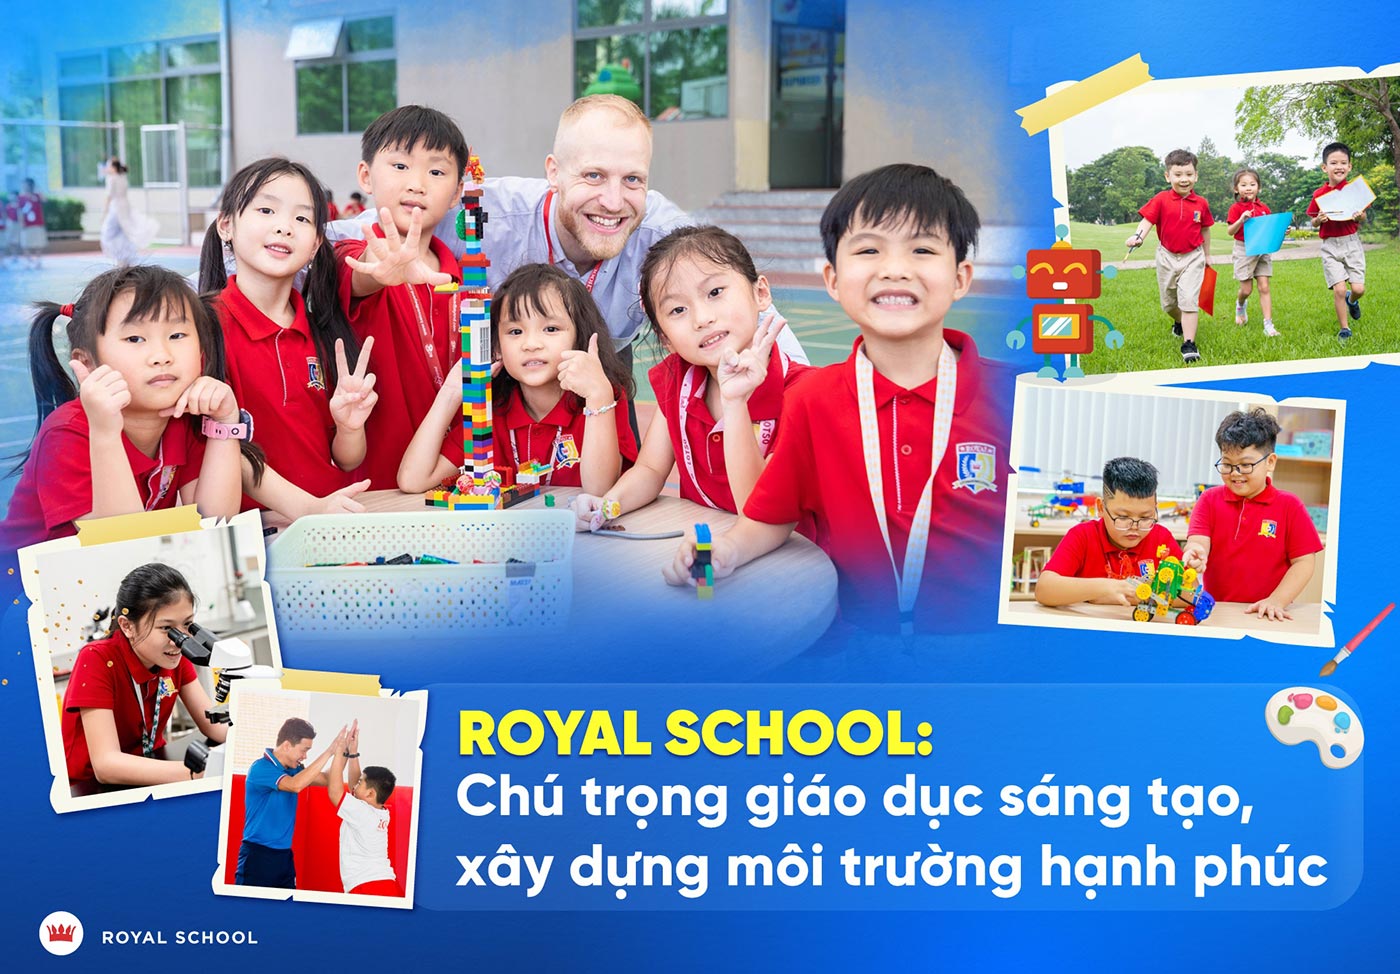 Royal School Chú trọng giáo dục sáng tạo, xây dựng môi trường hạnh phúc